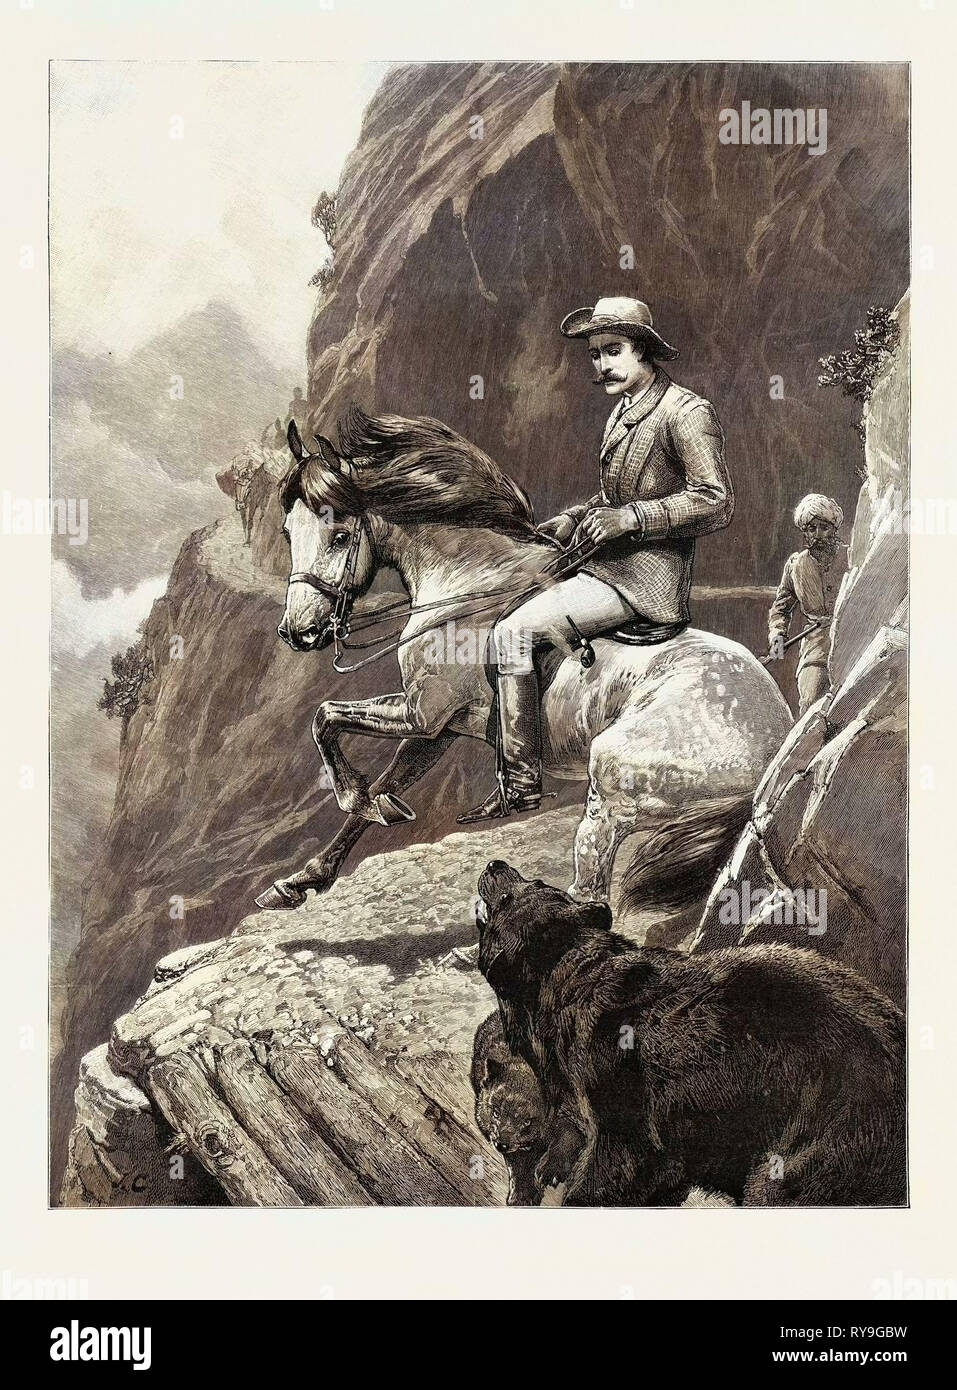 Une question de droit de passage : un incident de montagne dans la région de cachemire, Cachemire, Inde, 1892 Gravure Banque D'Images